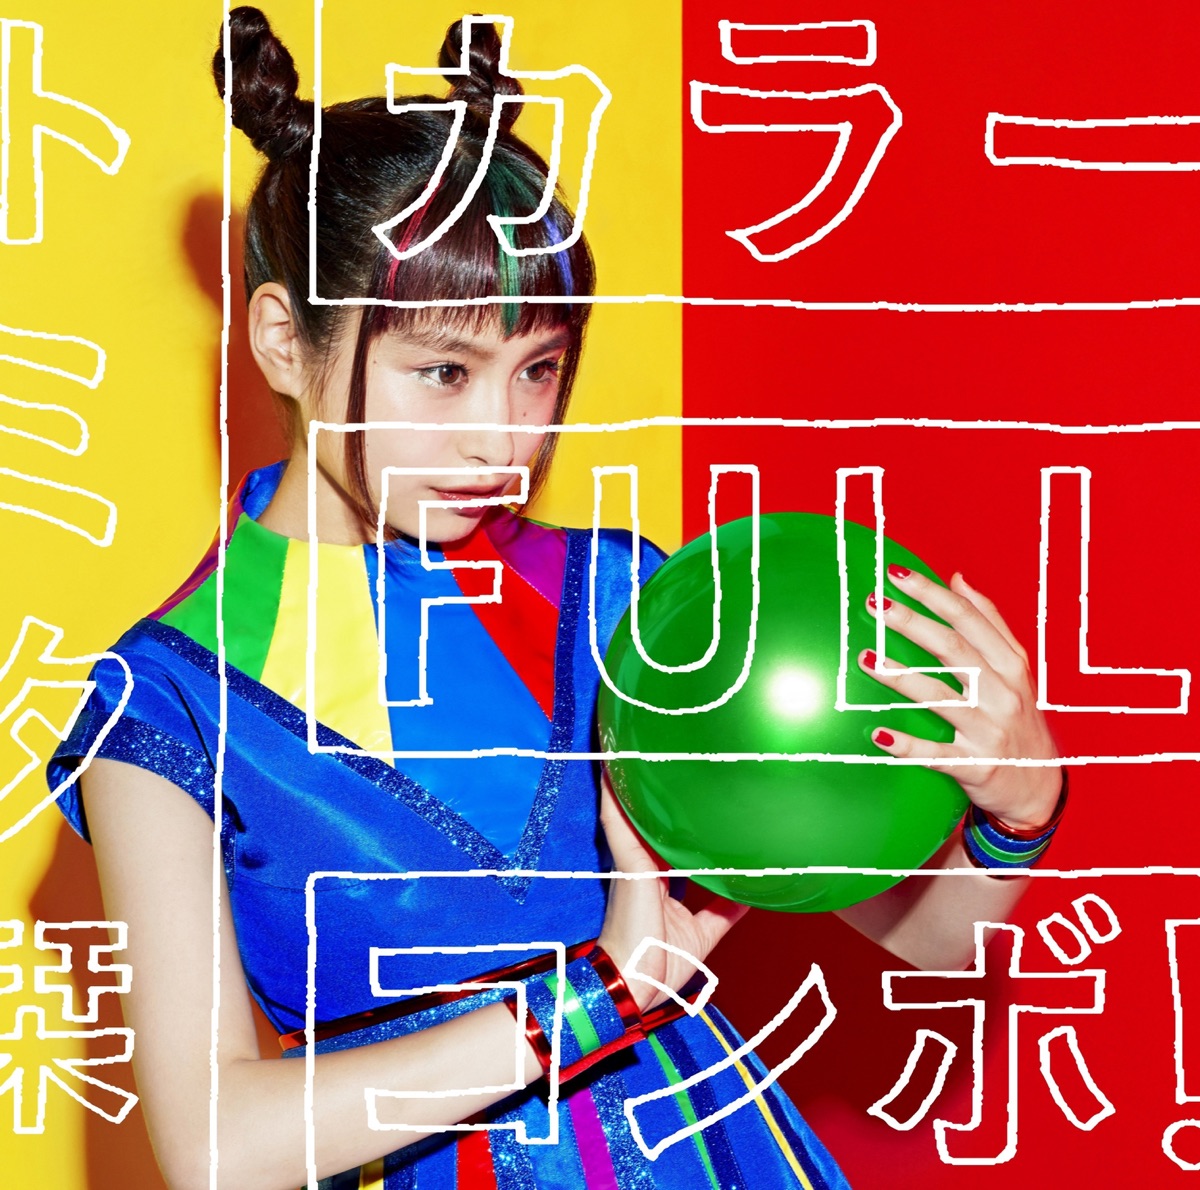 『トミタ栞 - カラーFULLコンボ！』収録の『カラーFULLコンボ！』ジャケット